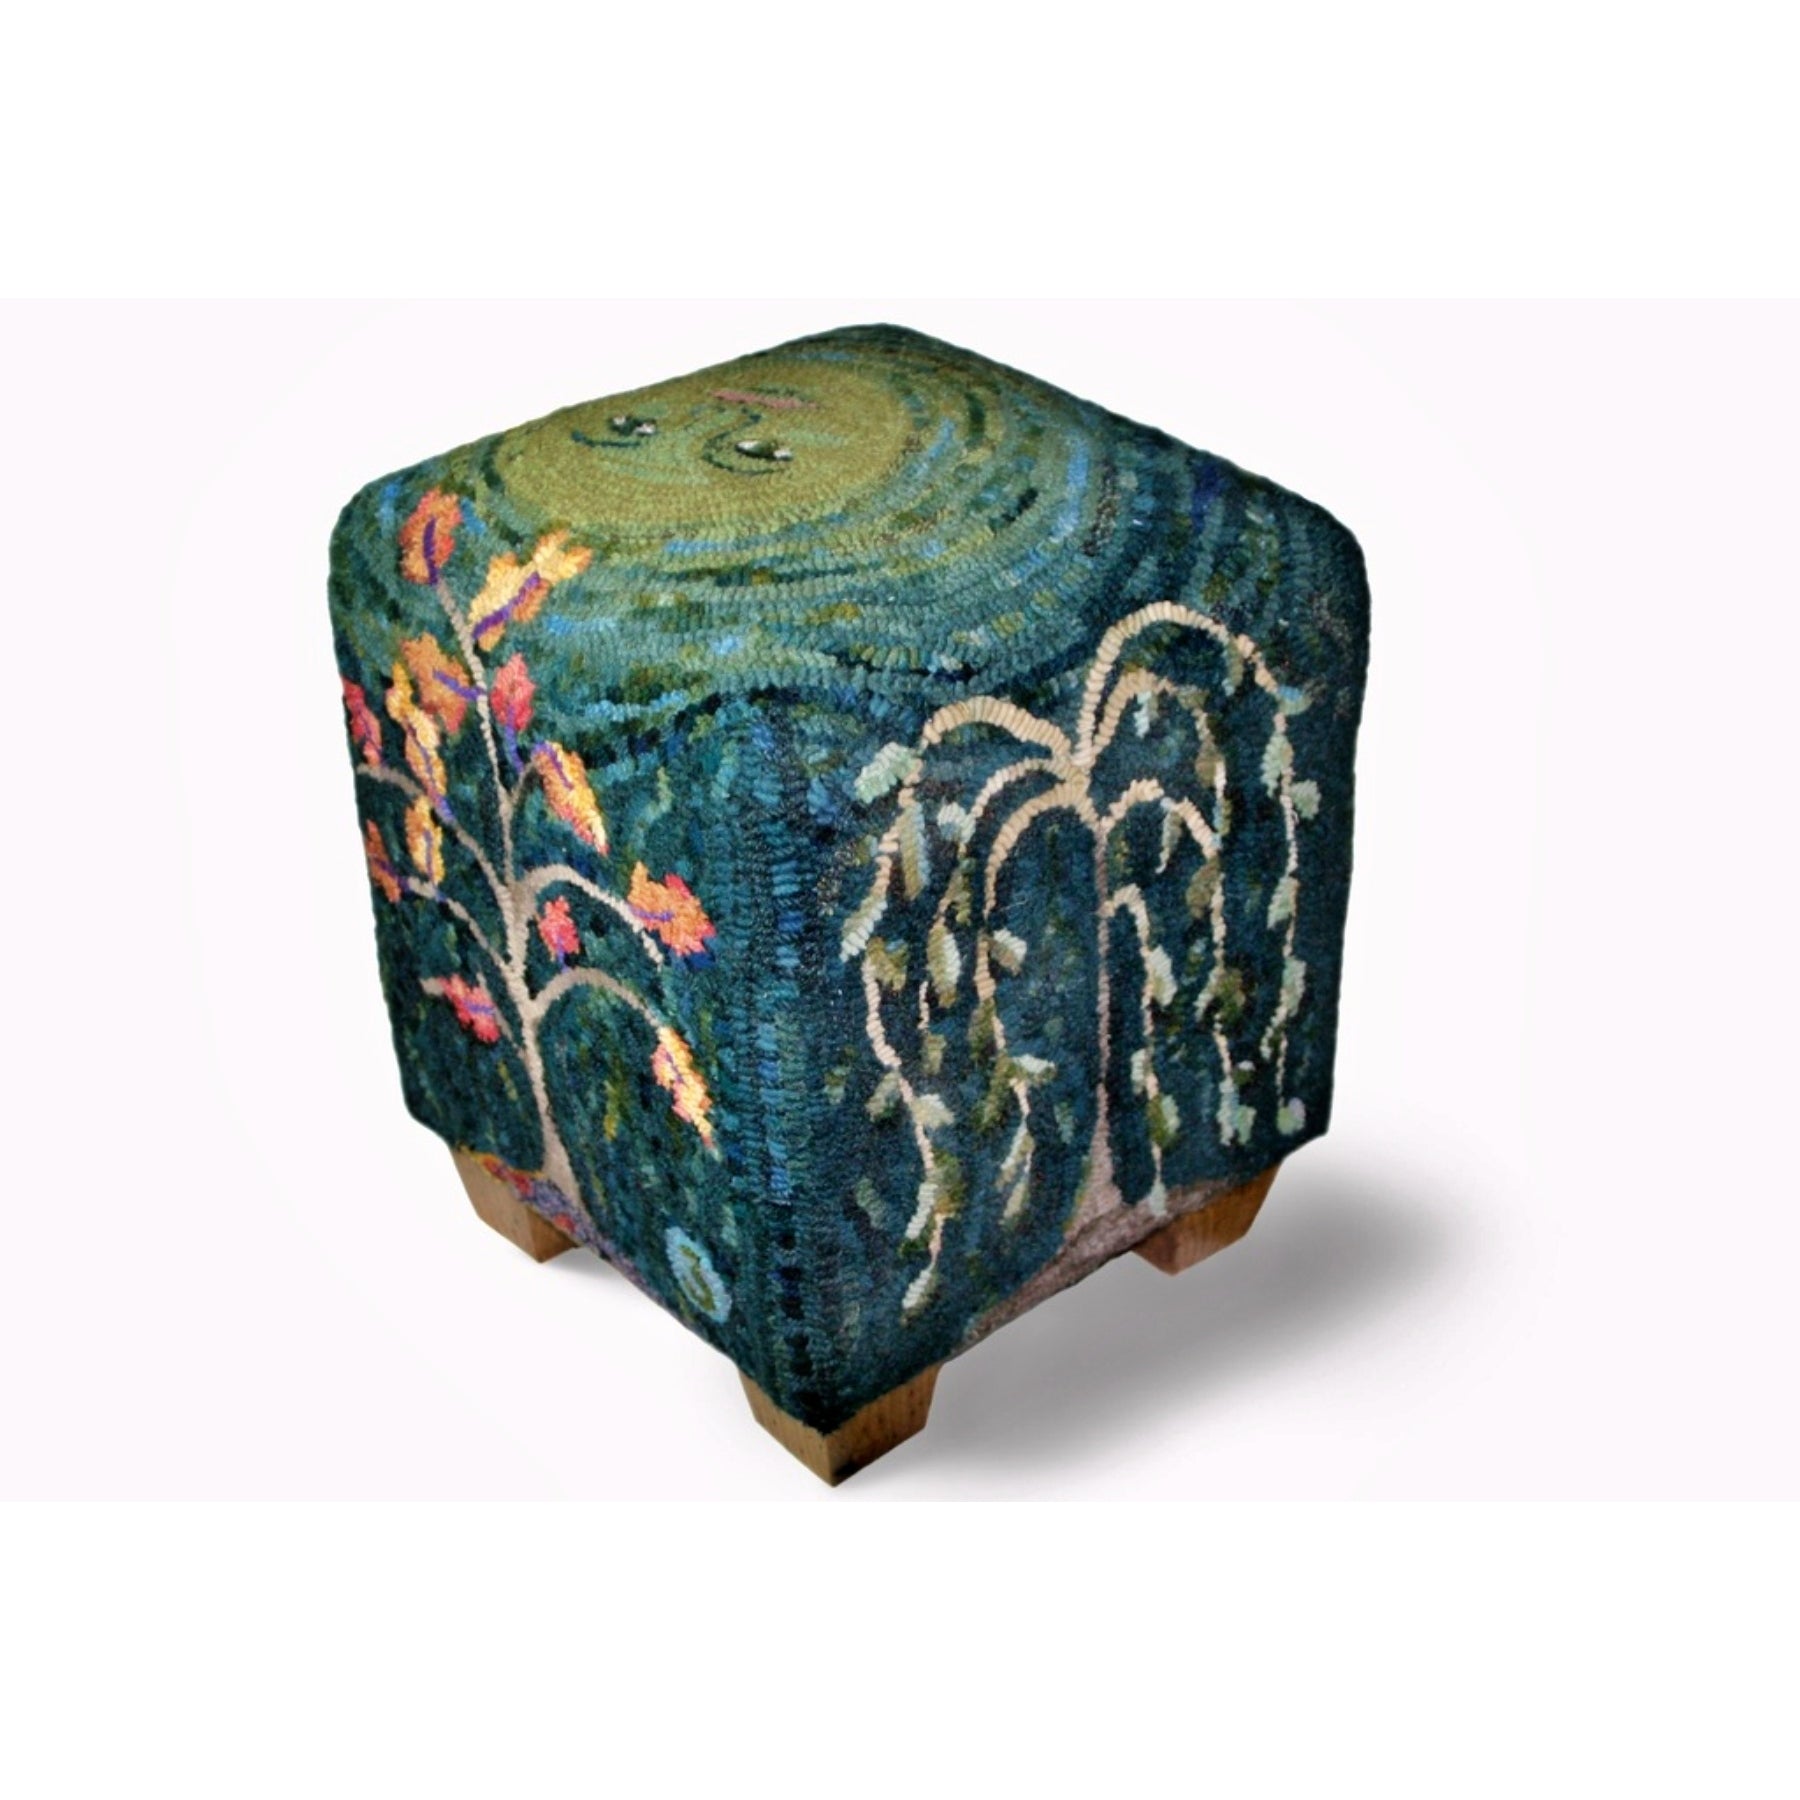 Seasons - Cube Footstool Pattern, rug hooked by Kim Nixon